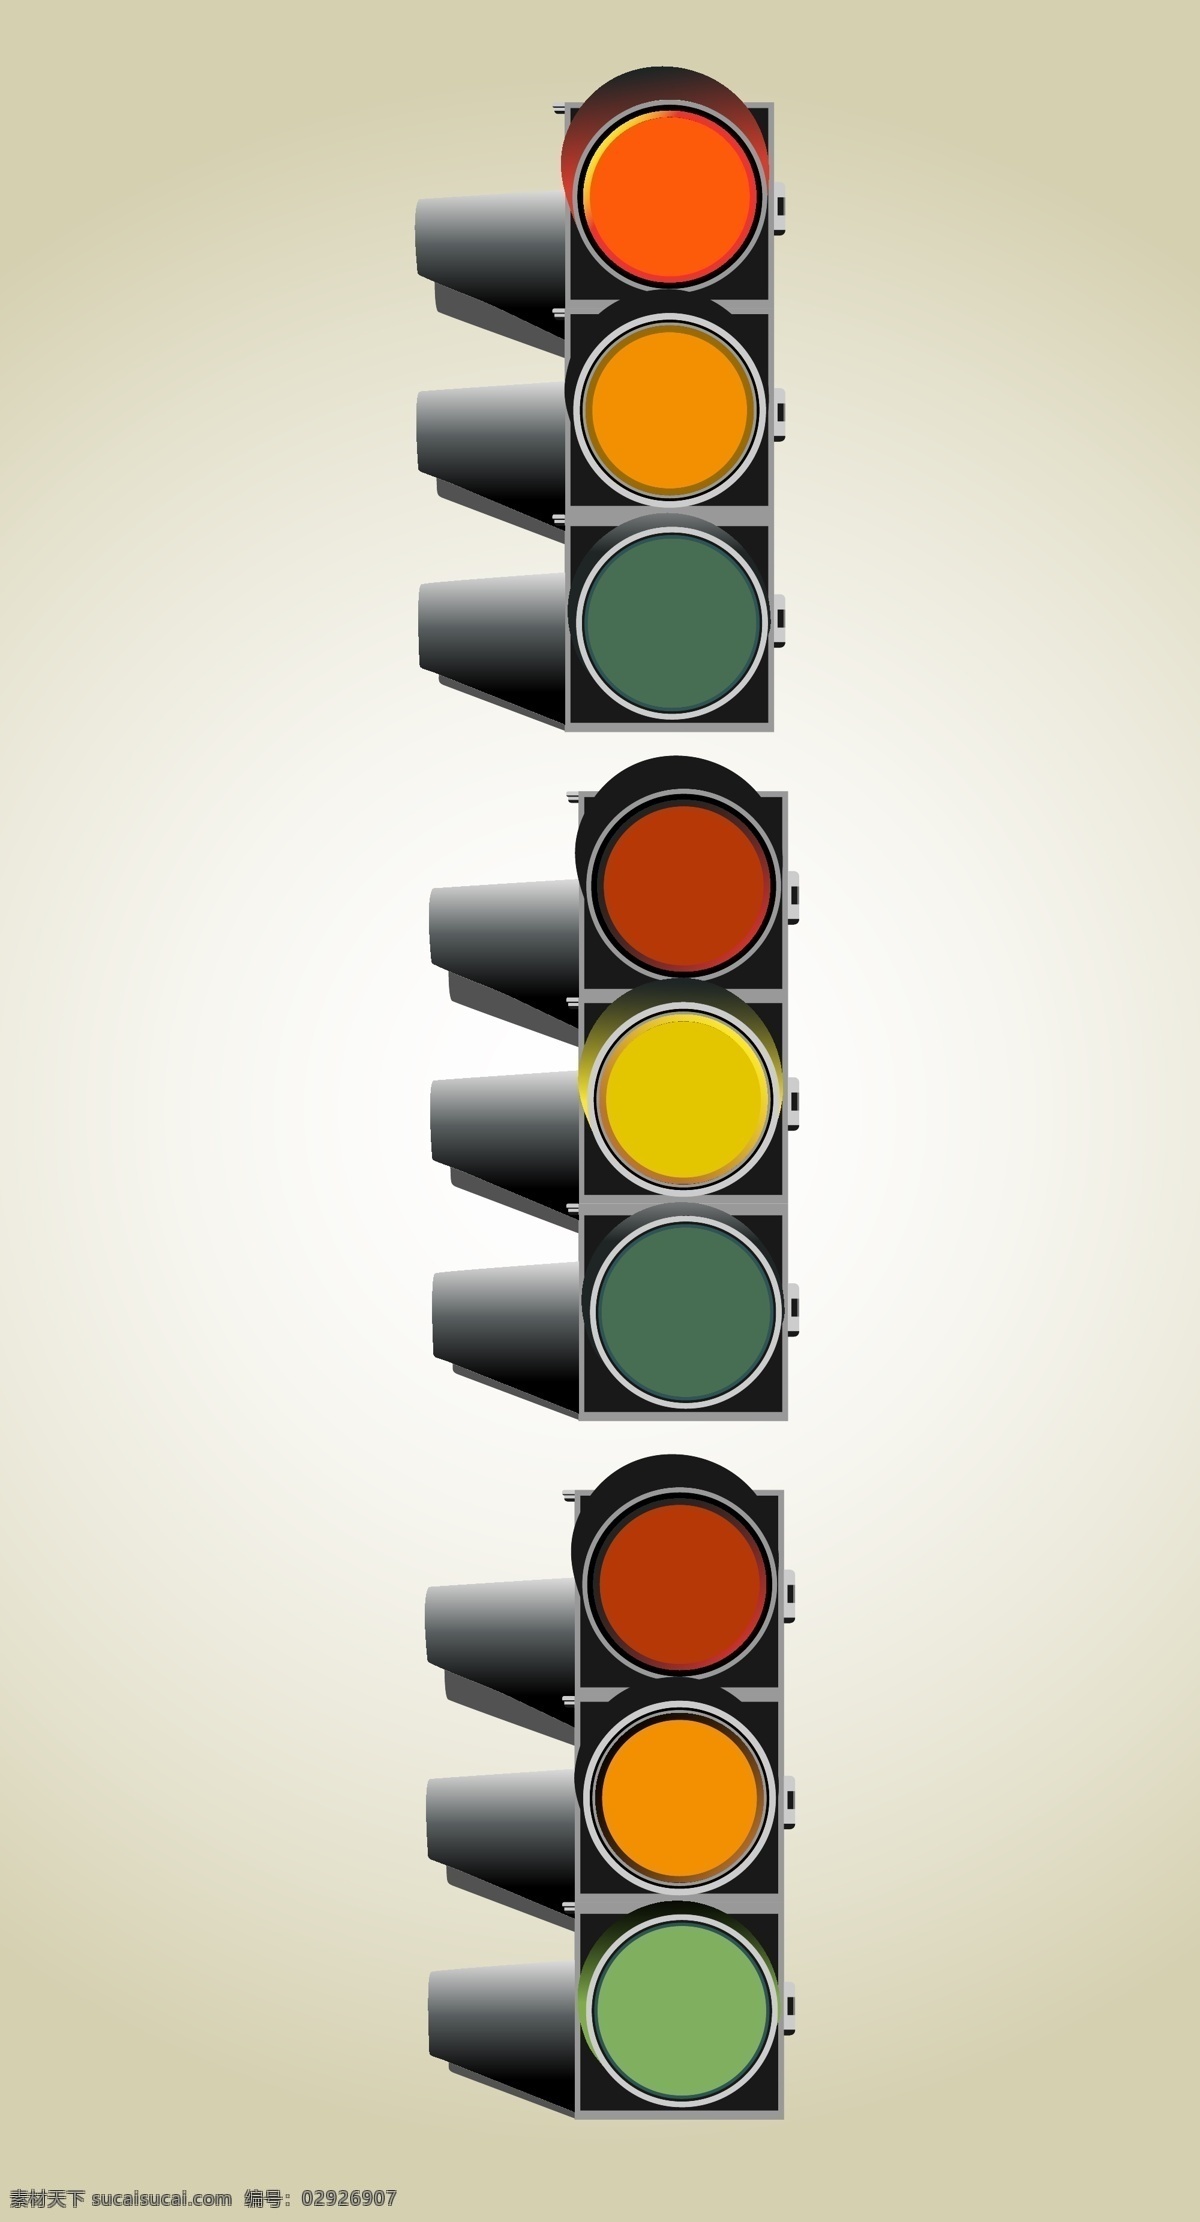 红绿灯 矢量 模板下载 红绿色 红灯 绿灯 黄灯 马路灯 交通灯 生活百科 矢量素材 白色